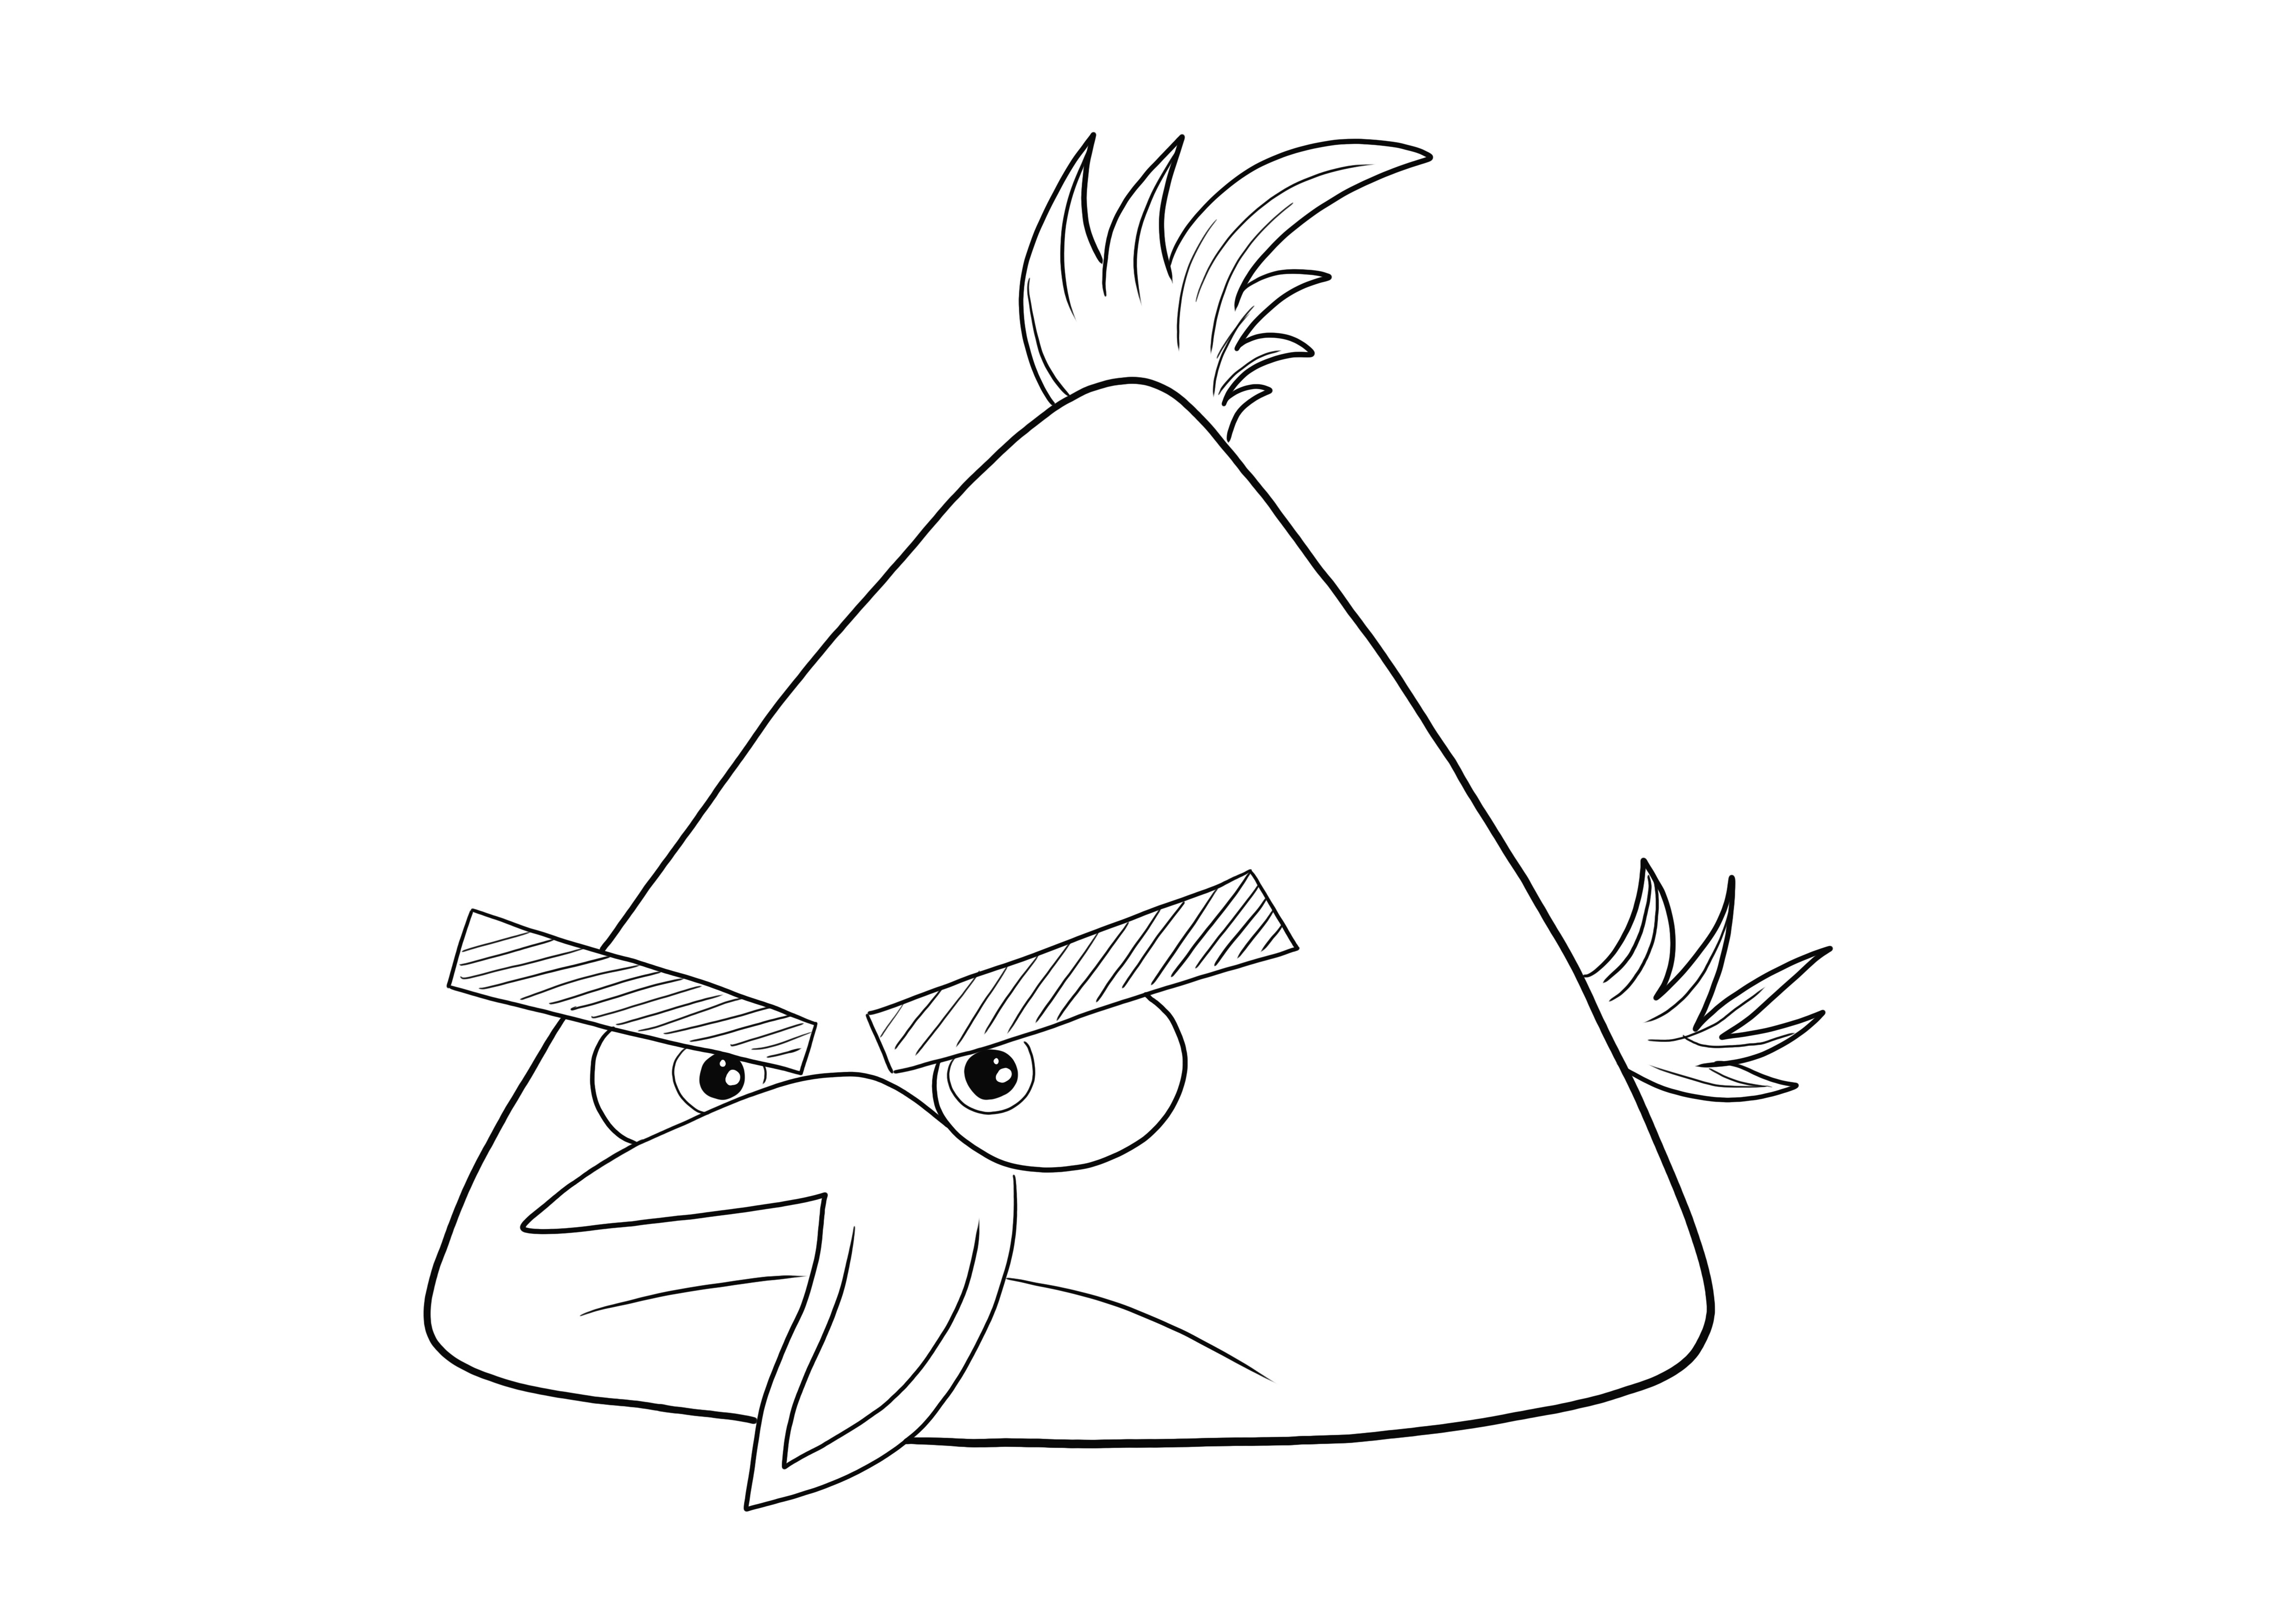 Chuck the Yellow Bird dal cartone animato Angry Birds da stampare e colorare gratis